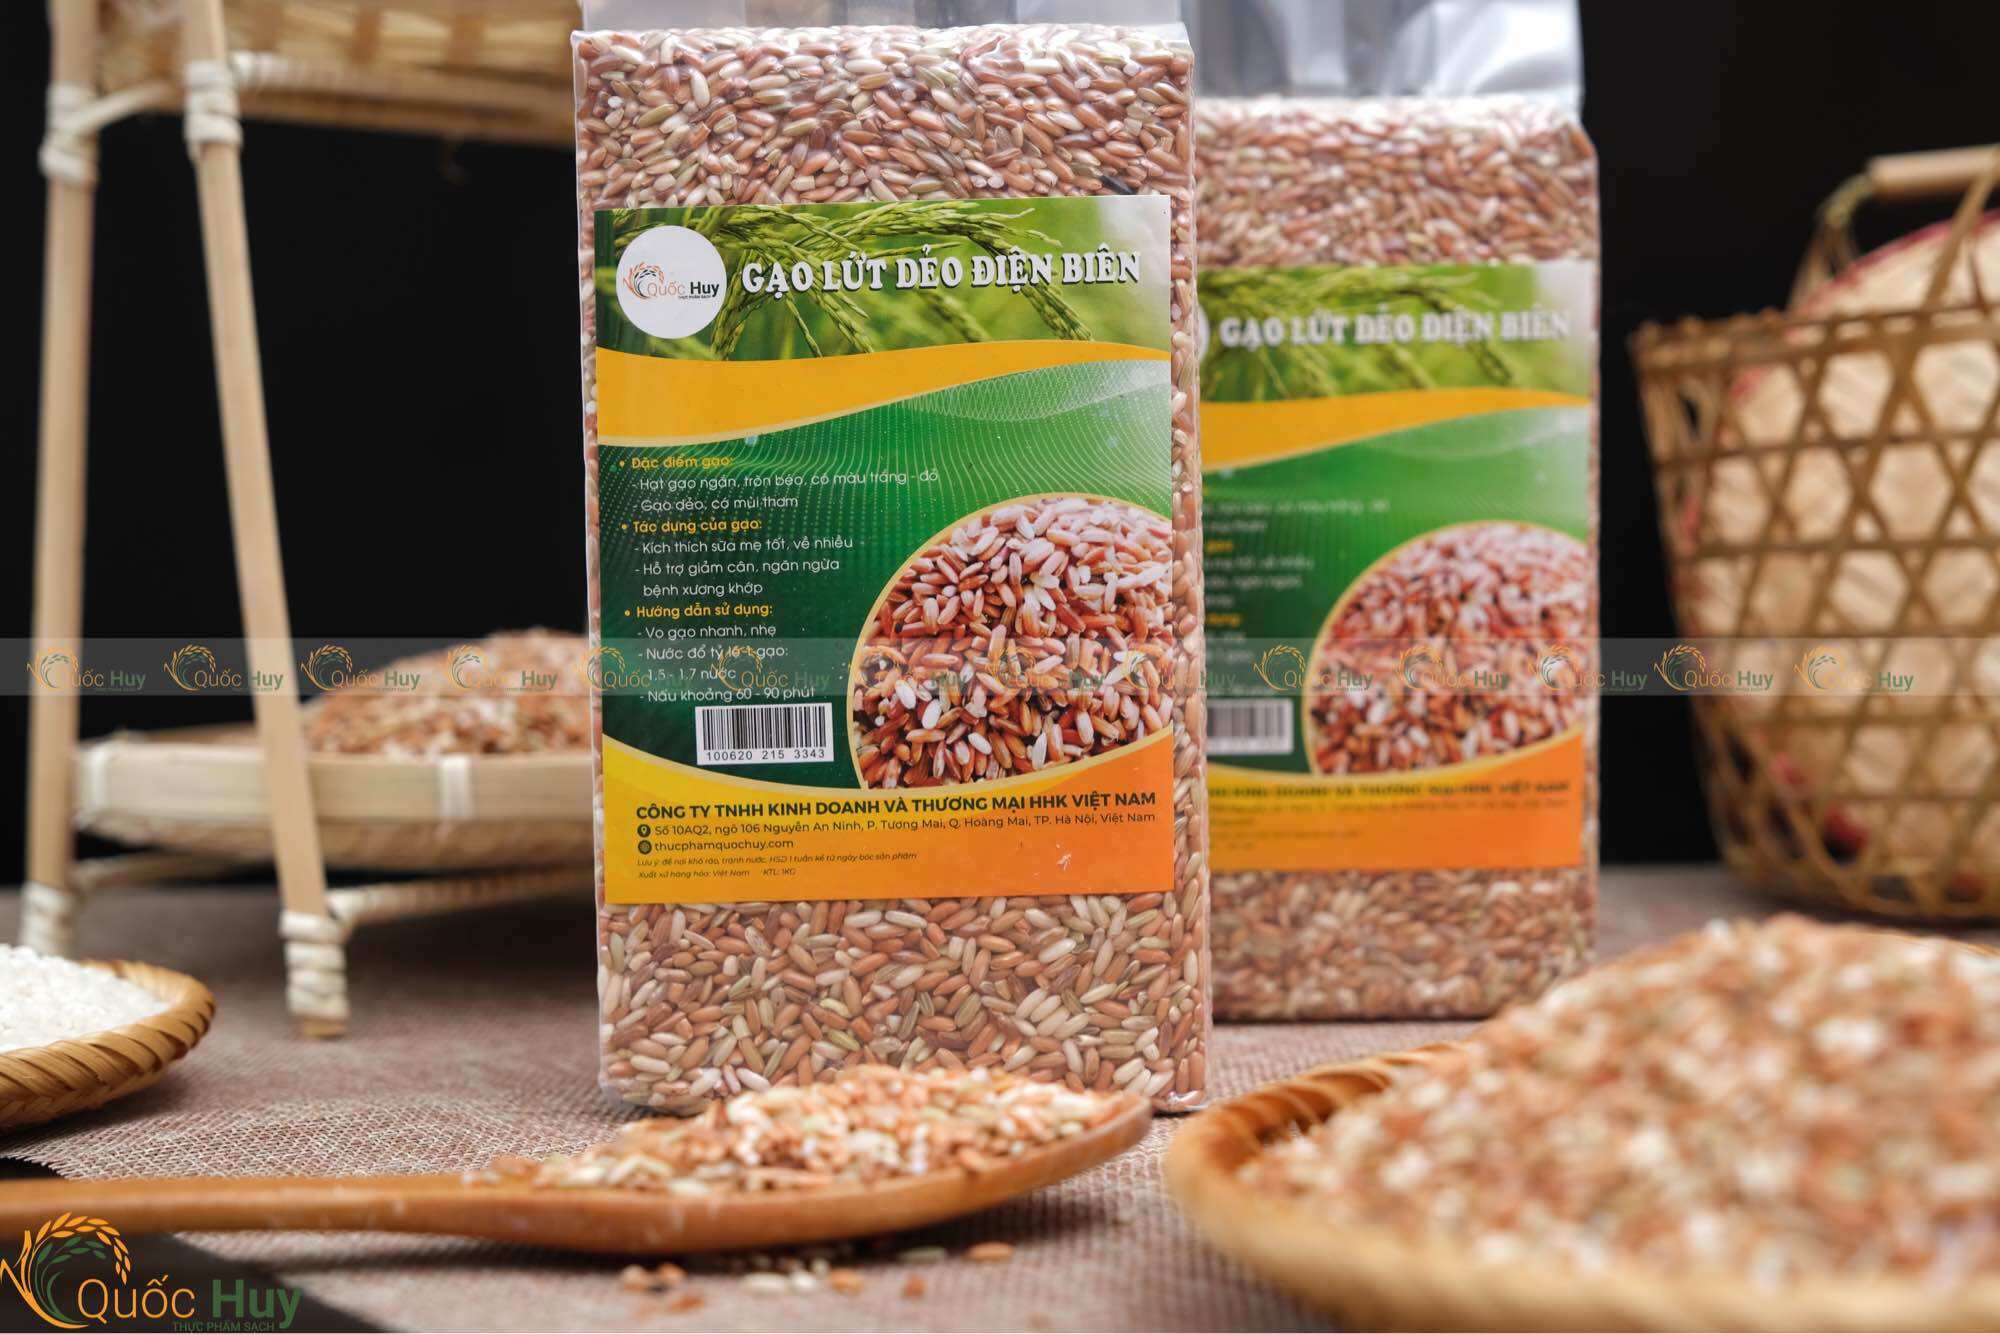 Gạo thực dưỡng Gạo lứt dẻo điện biên Túi 1kg